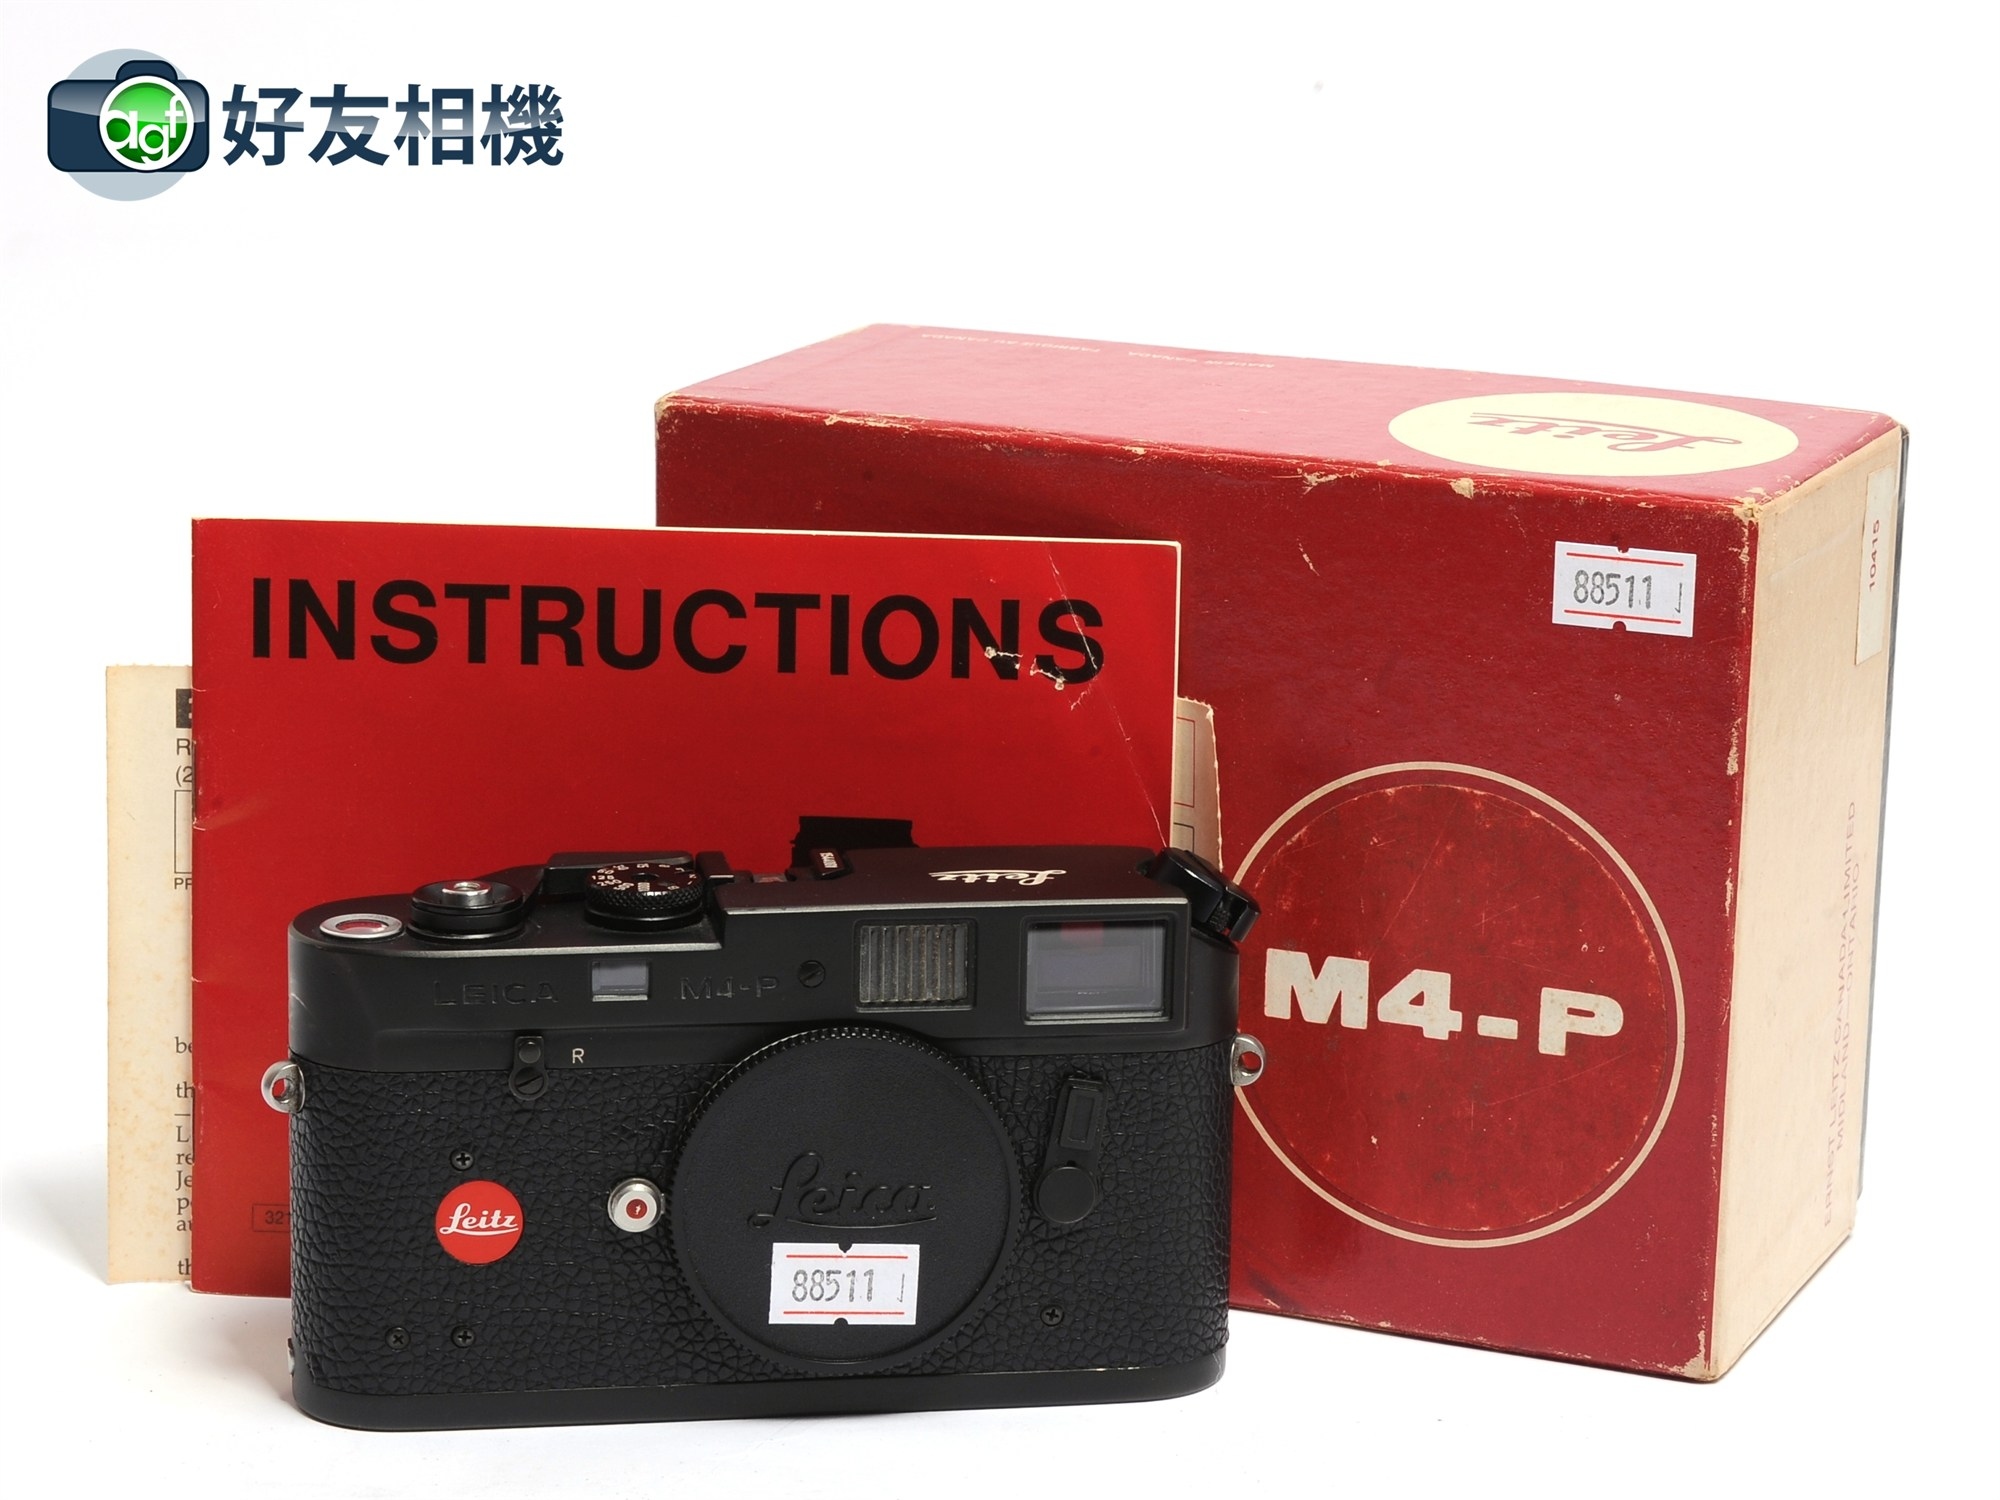 徕卡/Leica M4-P 旁轴相机 胶片机 经典款 黑色